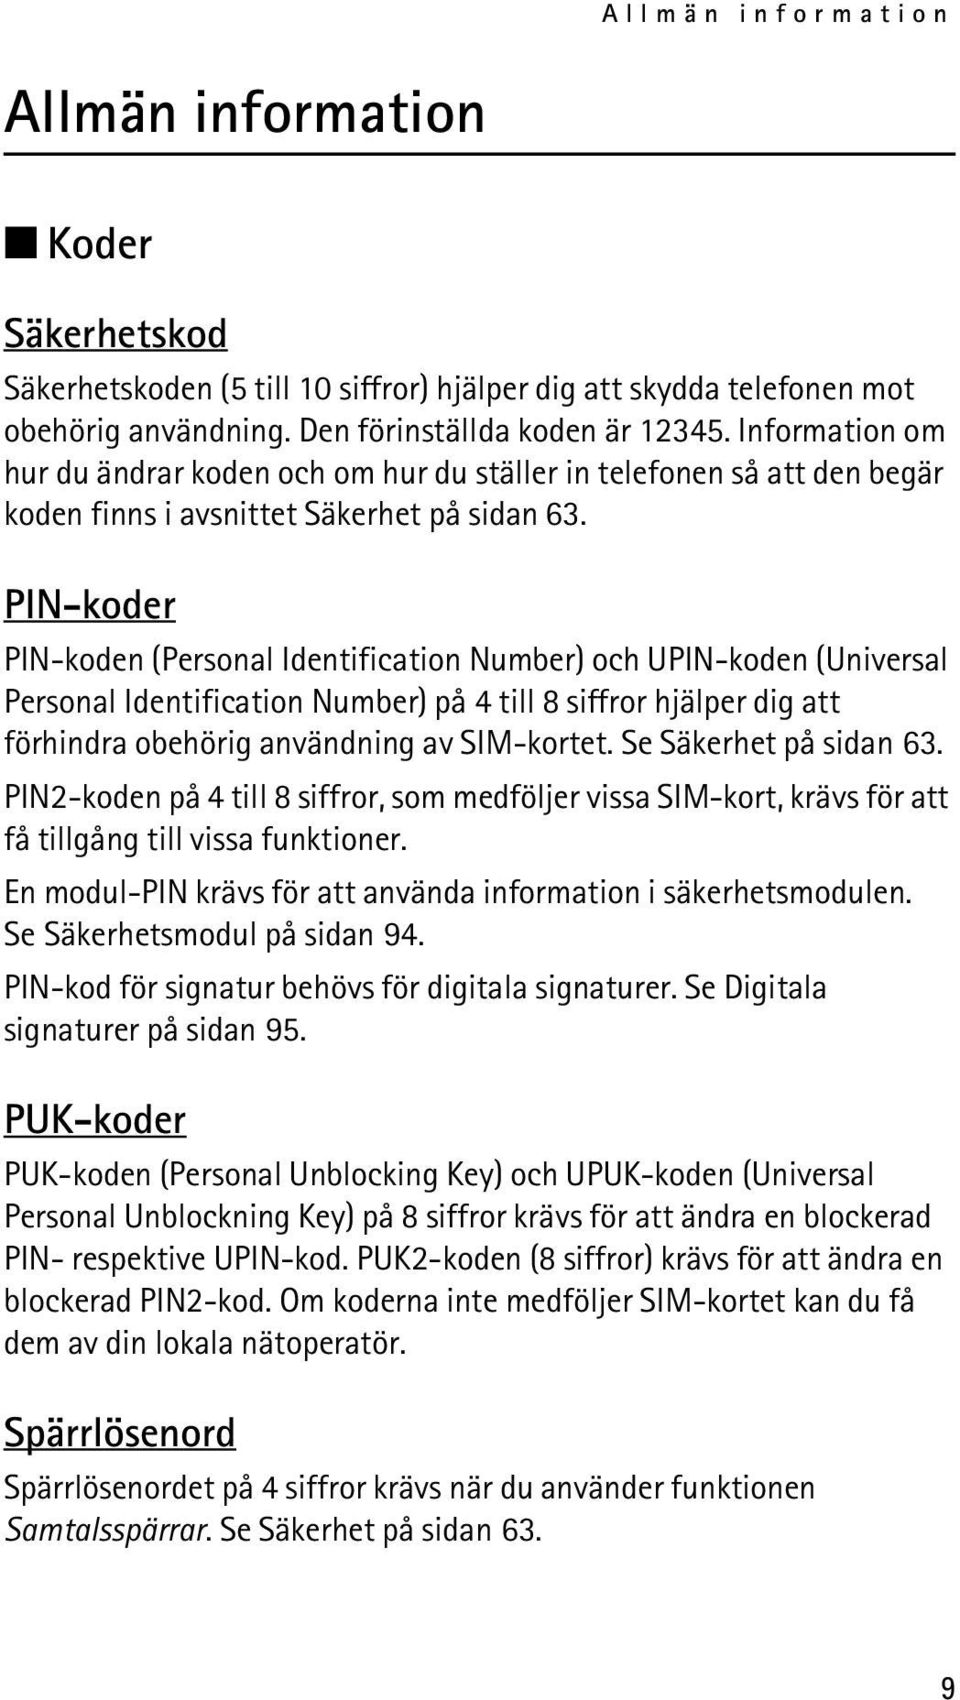 PIN-koder PIN-koden (Personal Identification Number) och UPIN-koden (Universal Personal Identification Number) på 4 till 8 siffror hjälper dig att förhindra obehörig användning av SIM-kortet.